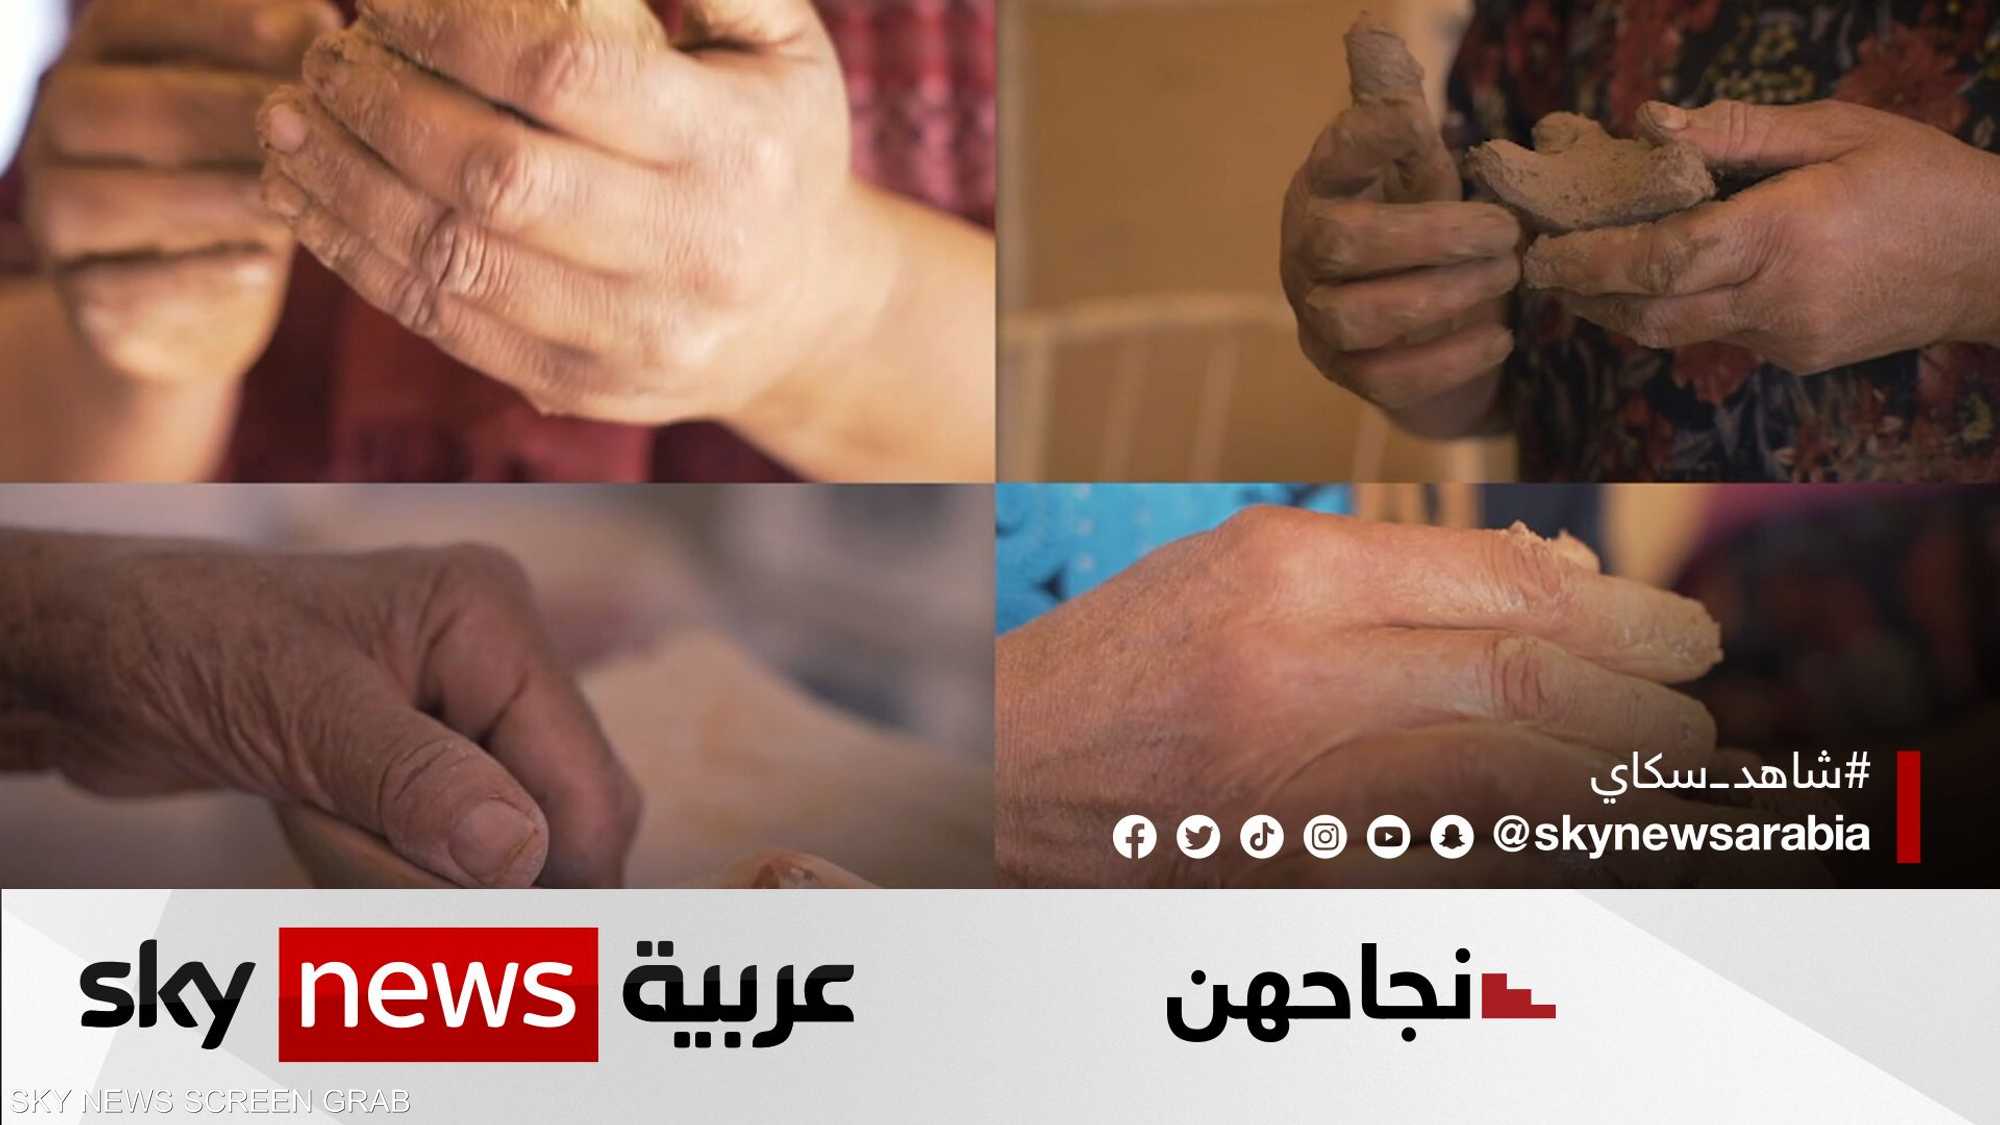 تونسية تدعم أنامل نسائية في تحويل الطين إلى قطع فنية